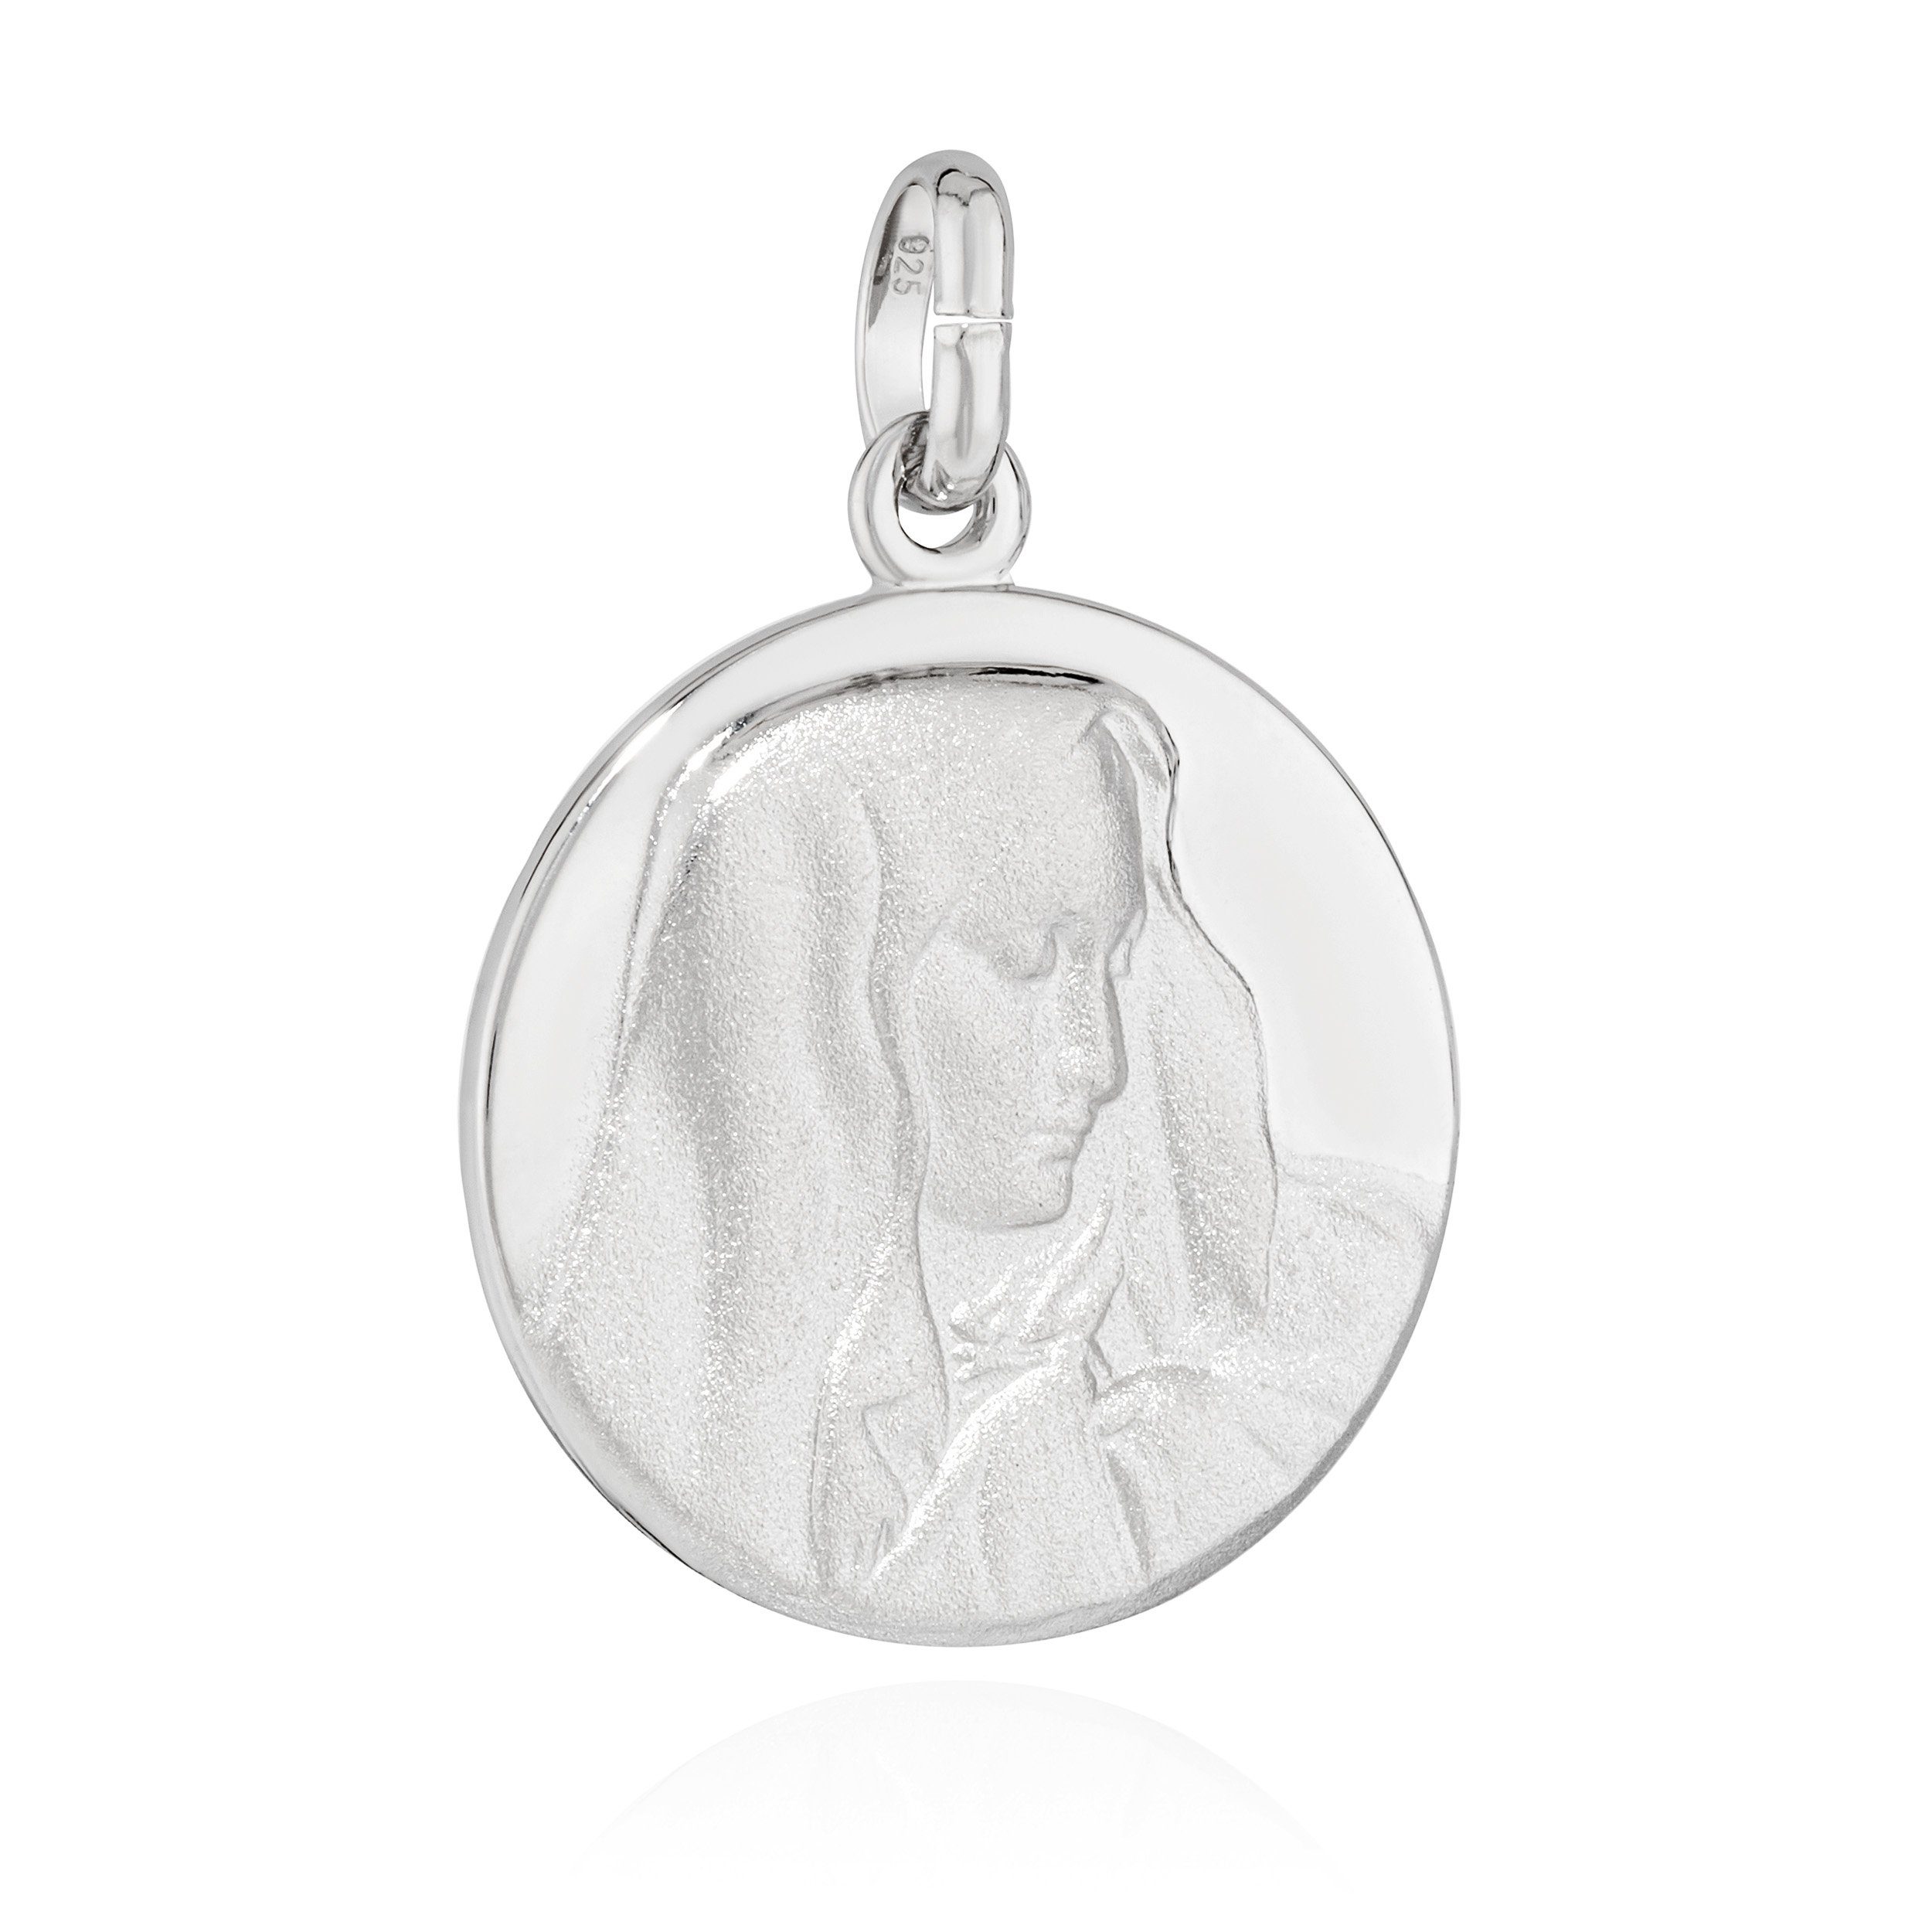 Talisman 16mm heilige Maria jungfrau NKlaus teilmatt Silber Kettenahänger Kettenanhänger 925